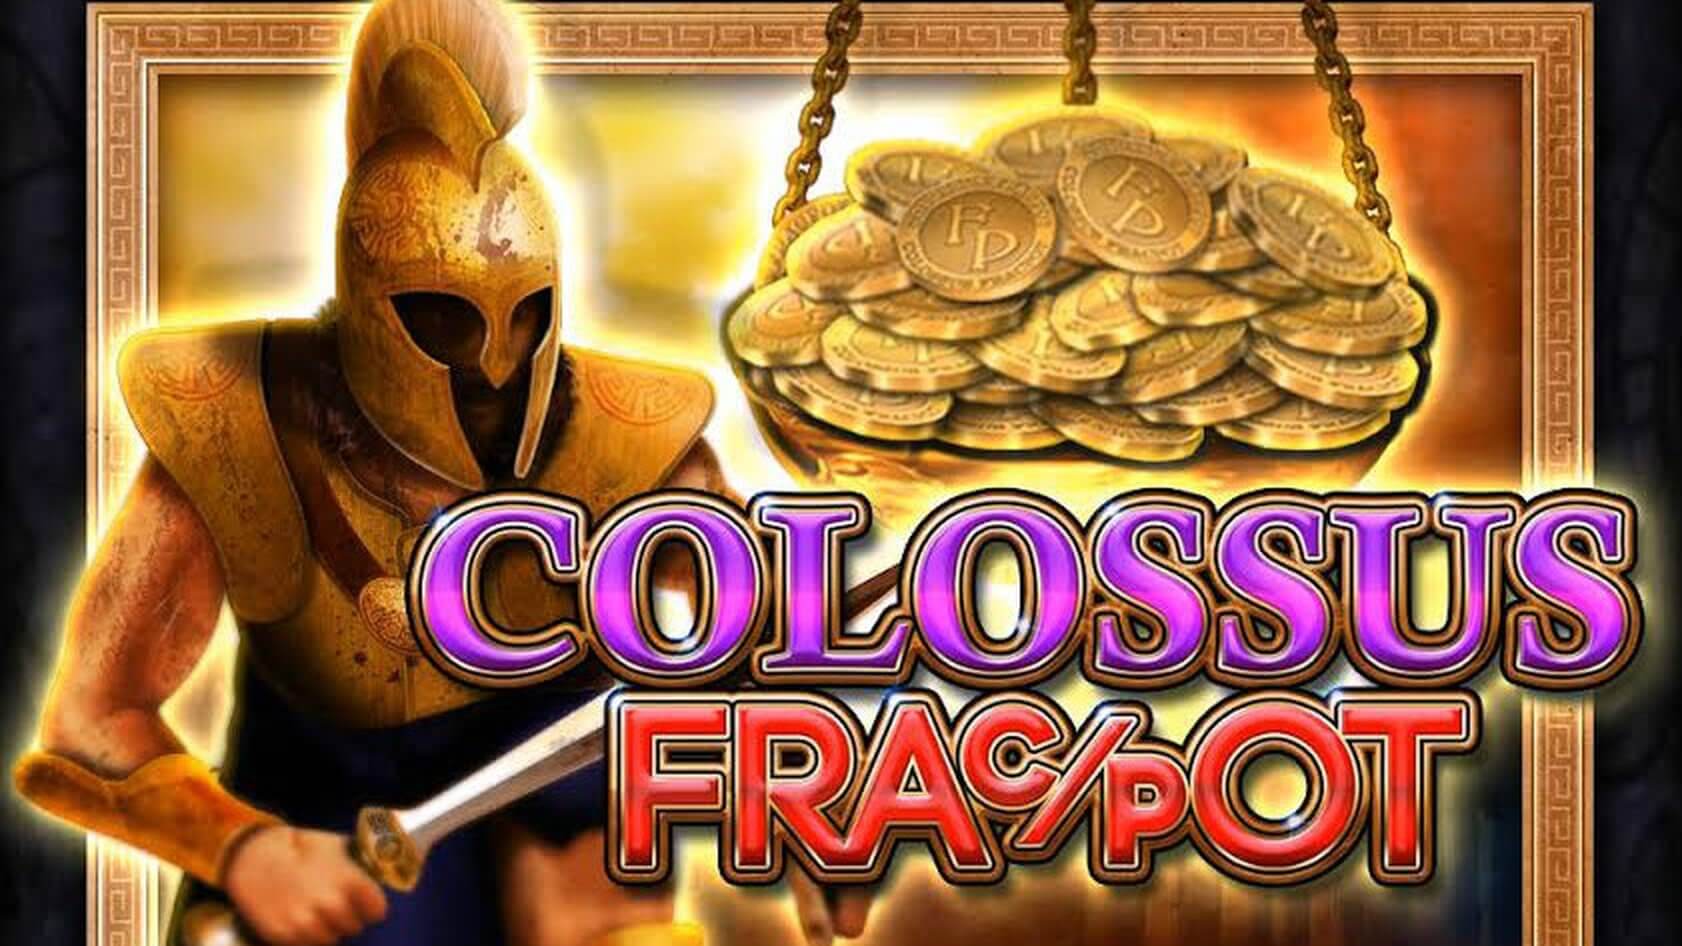 Colossus Fracpot slot